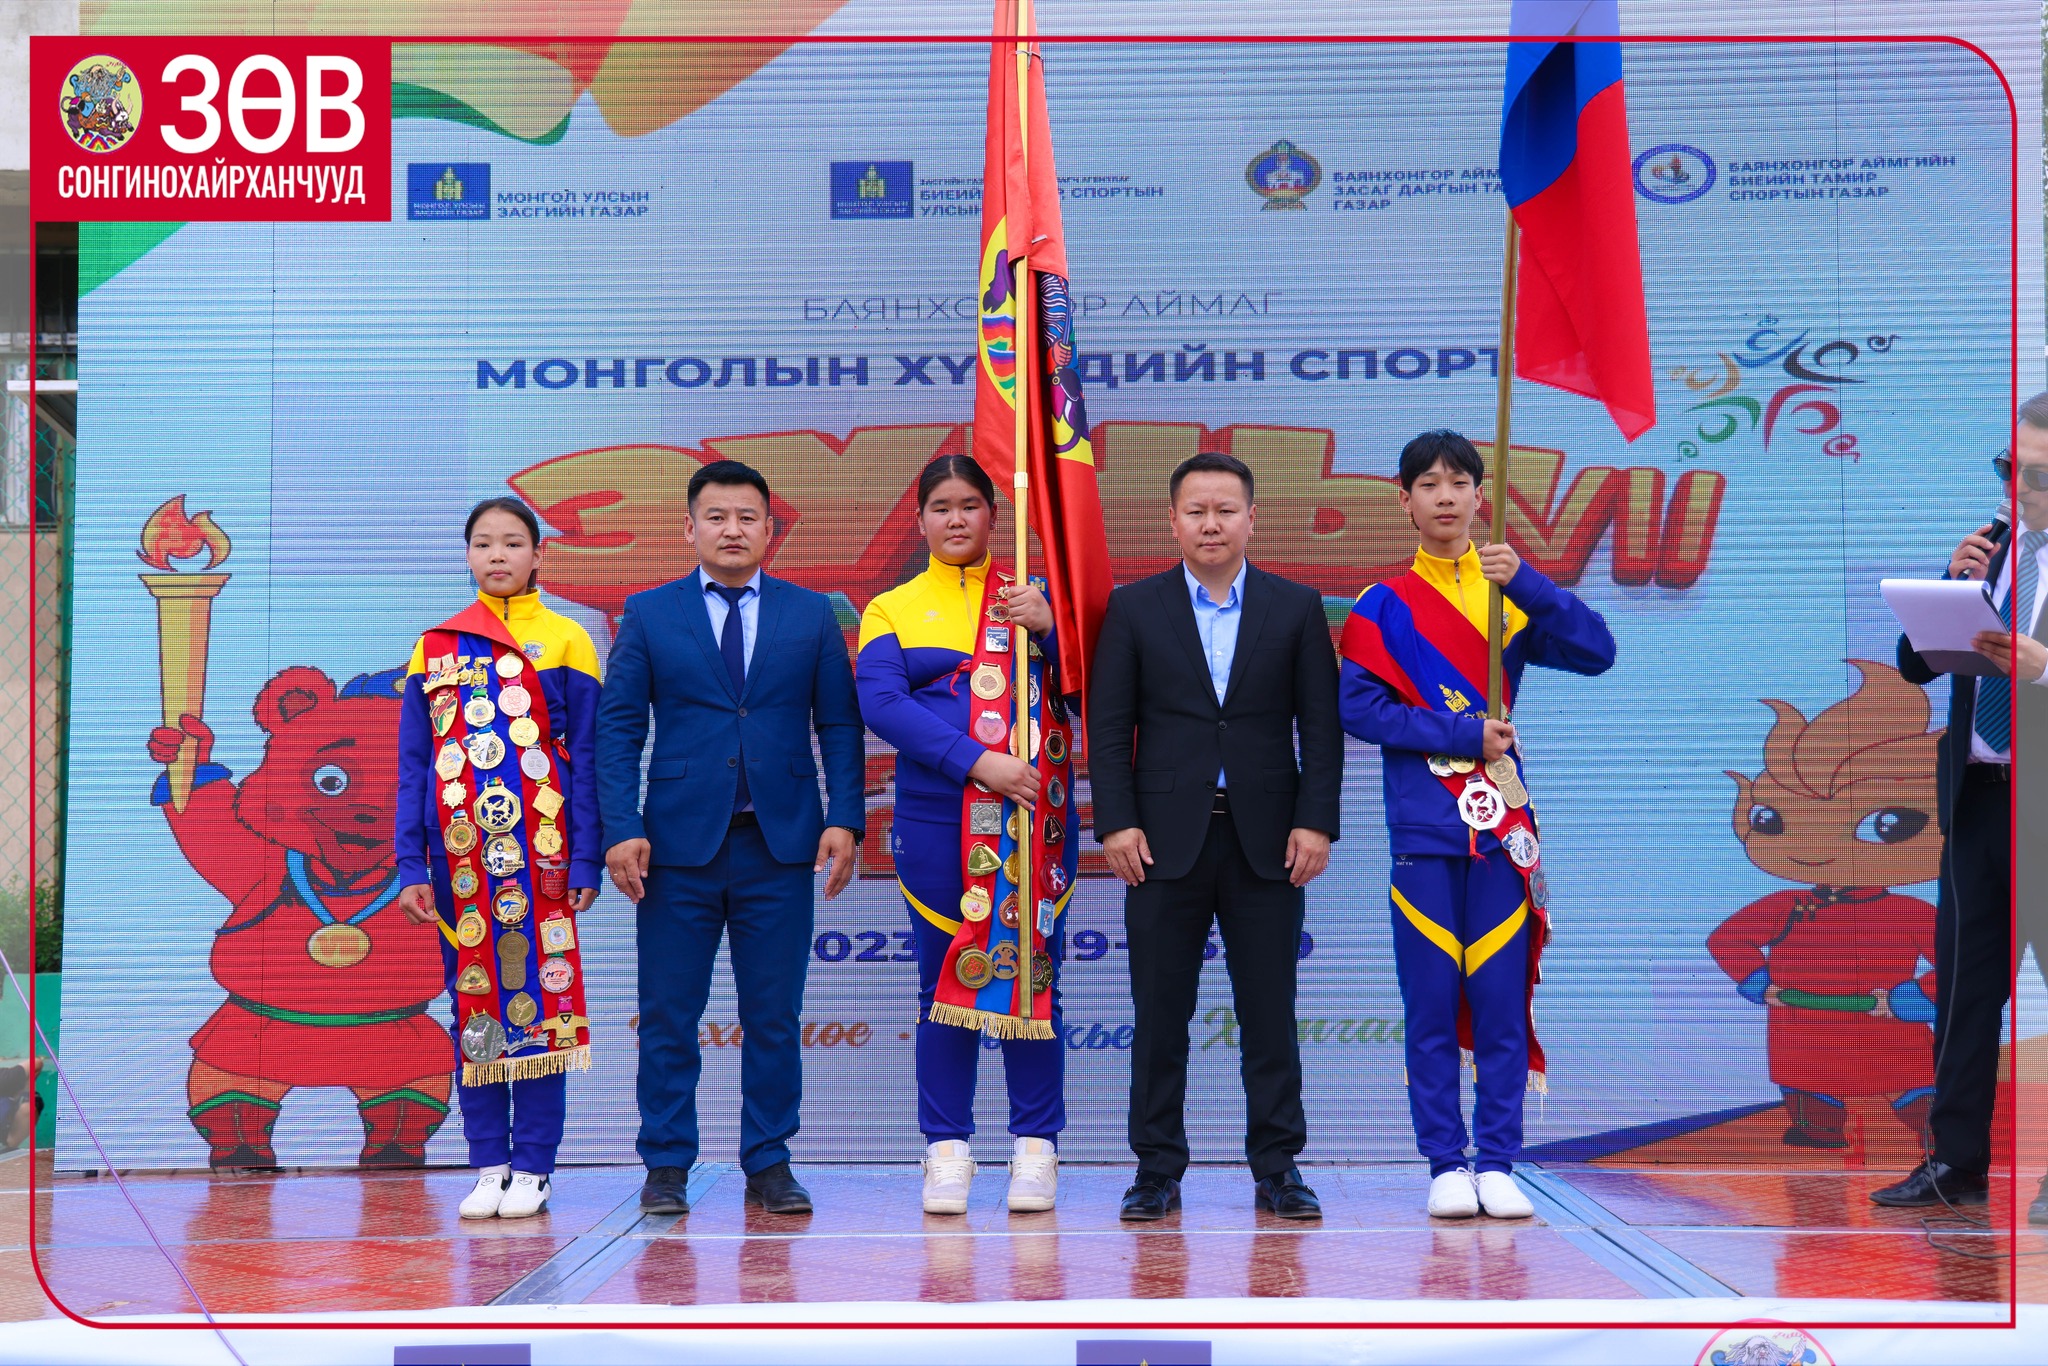 Монголын хүүхдийн спортын зуны VII наадамд оролцох тамирчдад туг гардууллаа